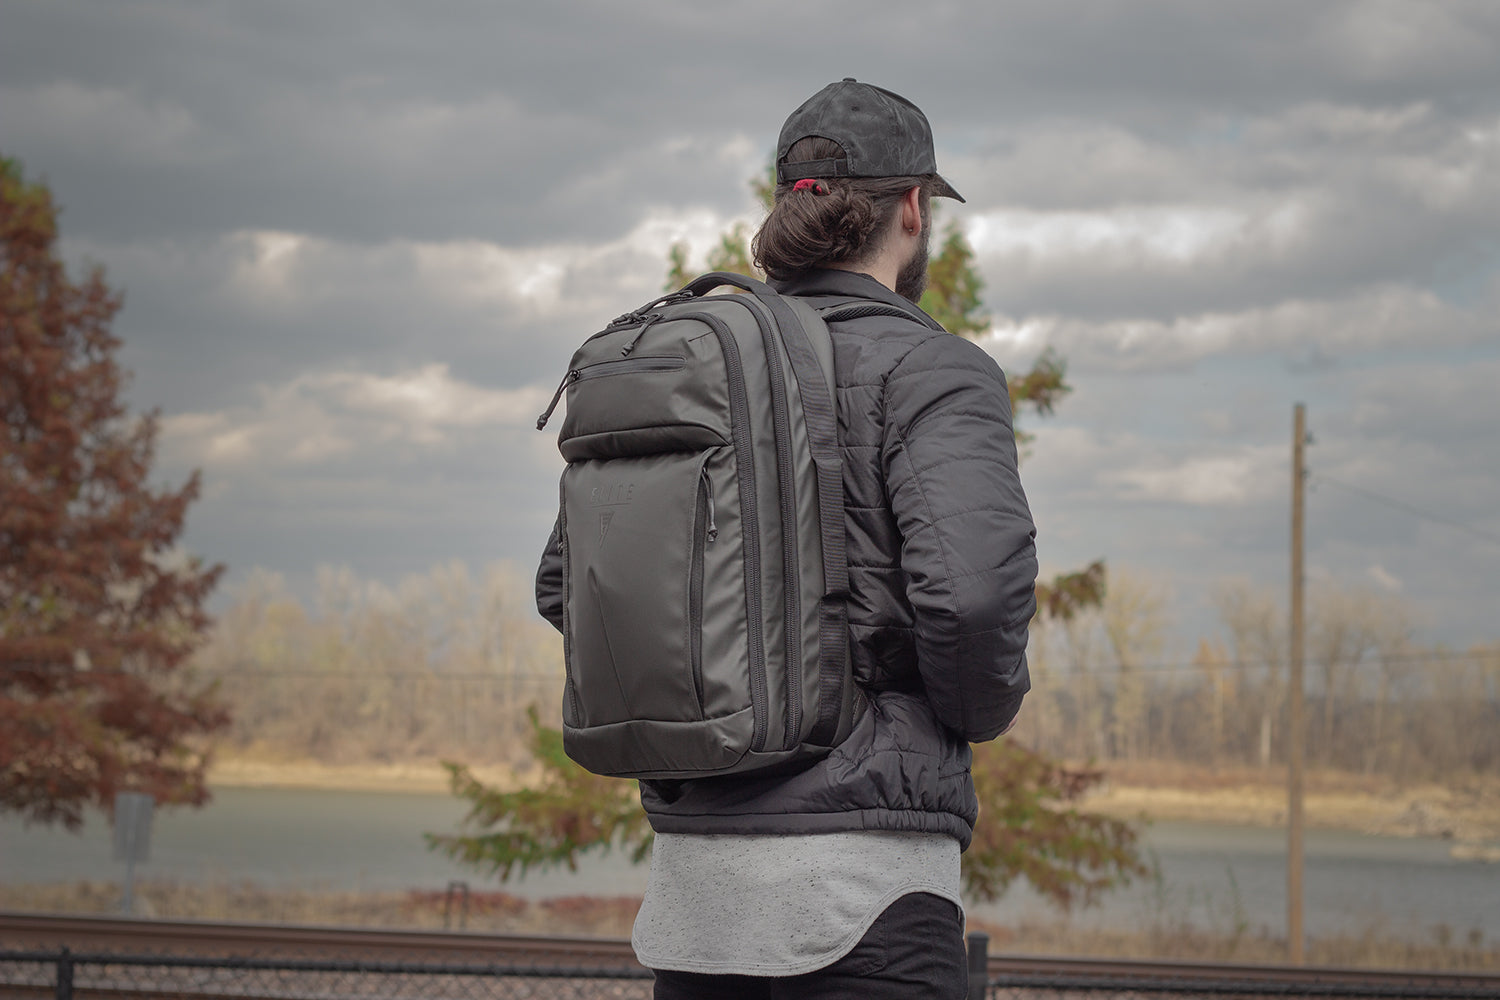 SBR Rifle Backpack | Discreet Rifle Case Backpack